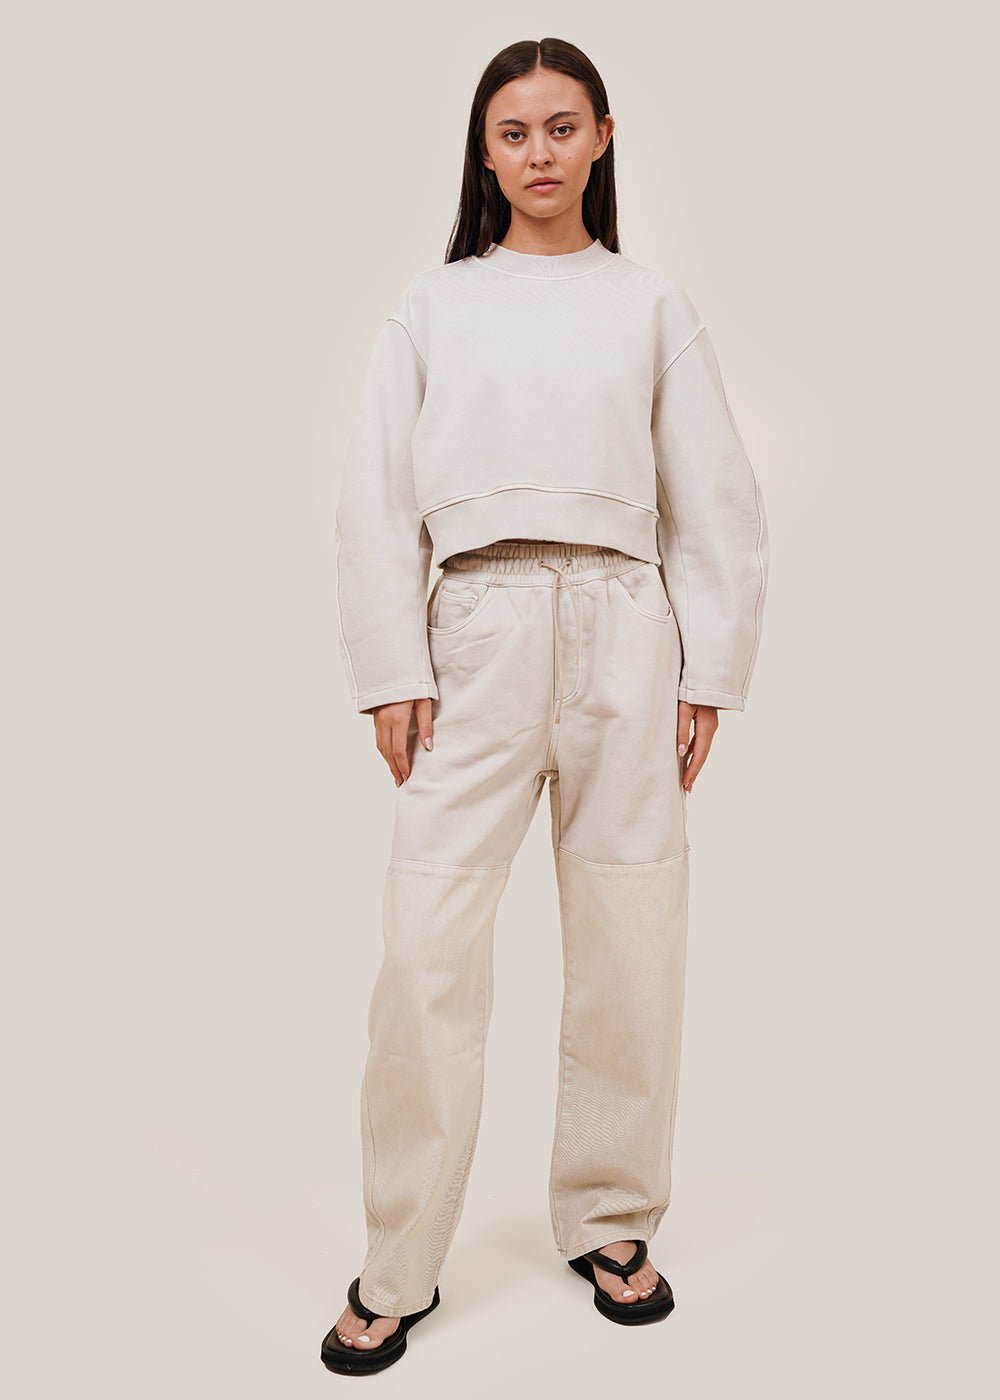 AMOMENTO Beige Round Sleeve Cropped Sweatshirt - New Classics Studios Sustainable Ethical Fashion Canada